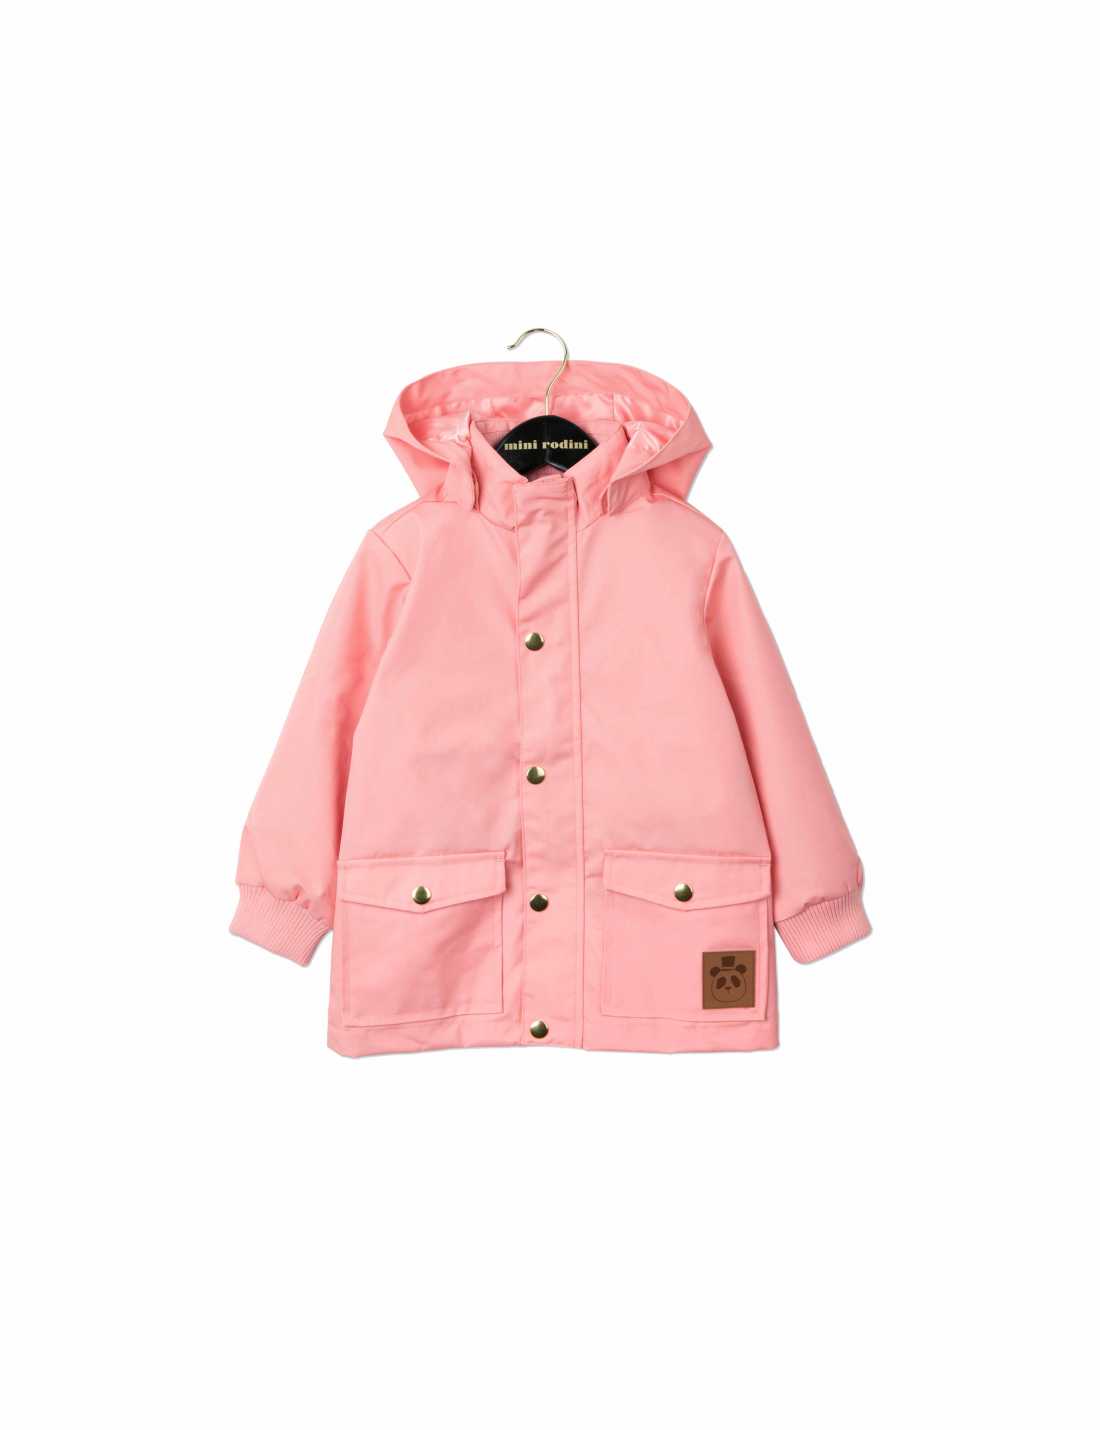 Mini Rodini Pink Pico Jacket 